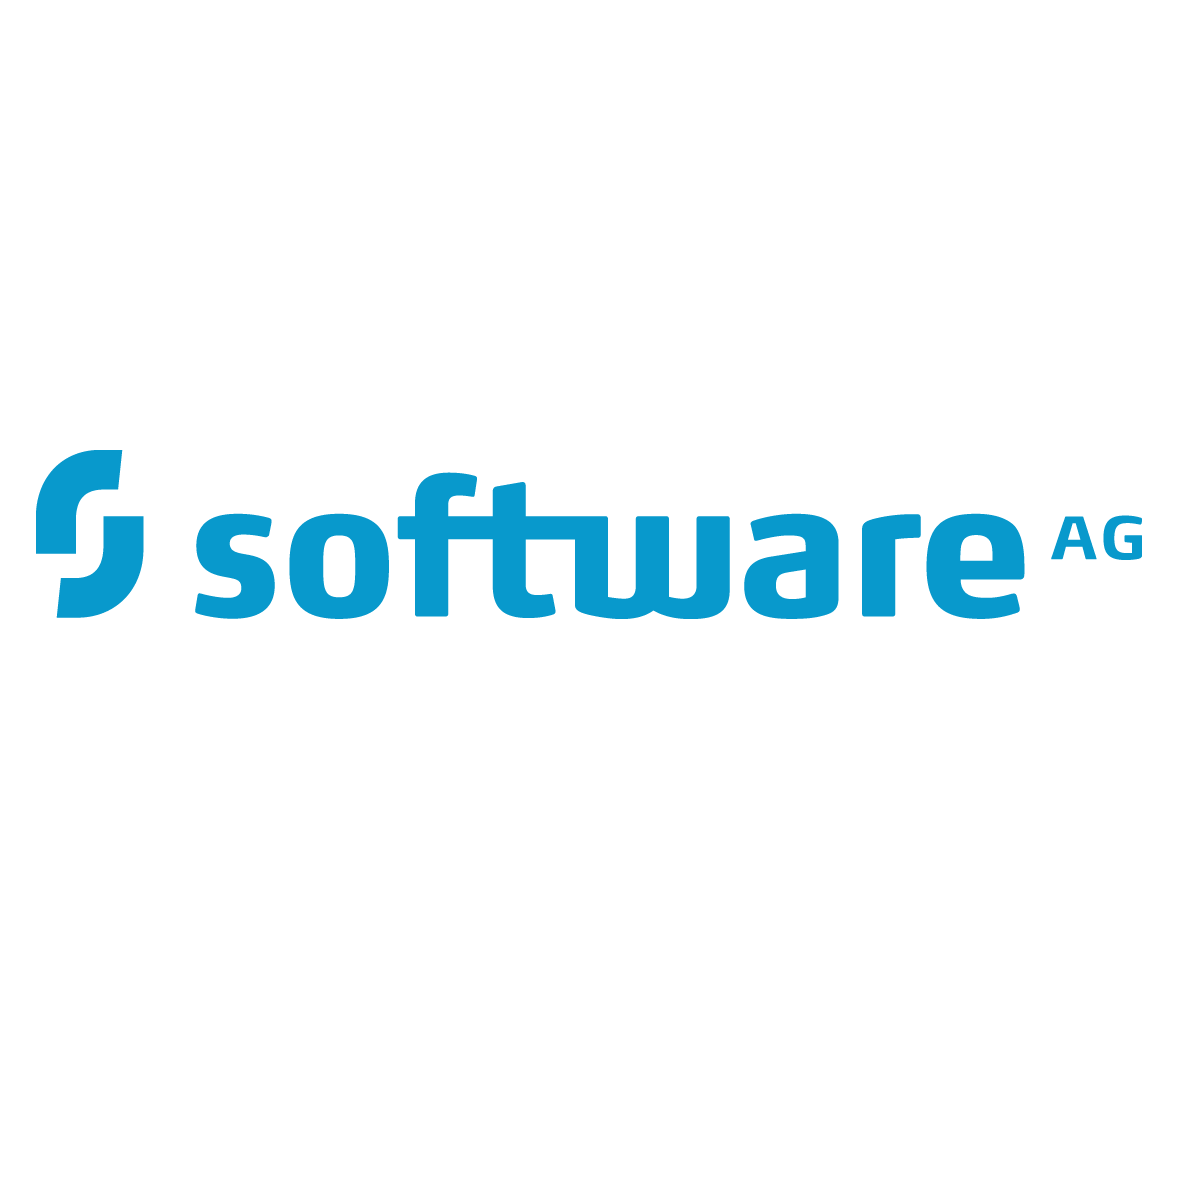 Software AG API Portal